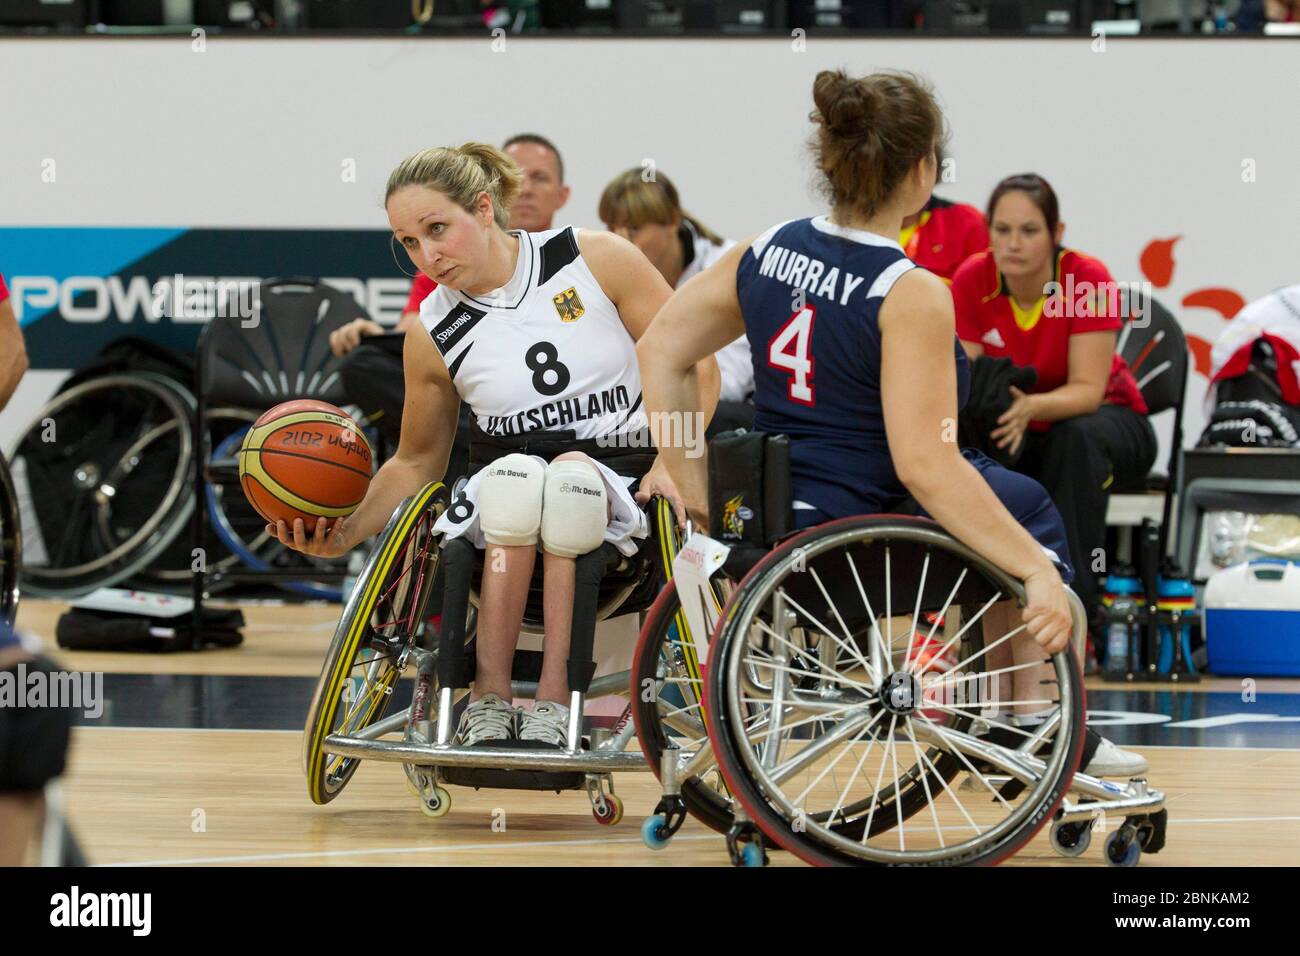 Londra Inghilterra, settembre 1 2012: Annika Zeyen, in Germania, afferra il basket tra i giocatori degli Stati Uniti durante una partita di basket femminile in carrozzina presso la London Paralympics. ©Bob Daemmrich Foto Stock